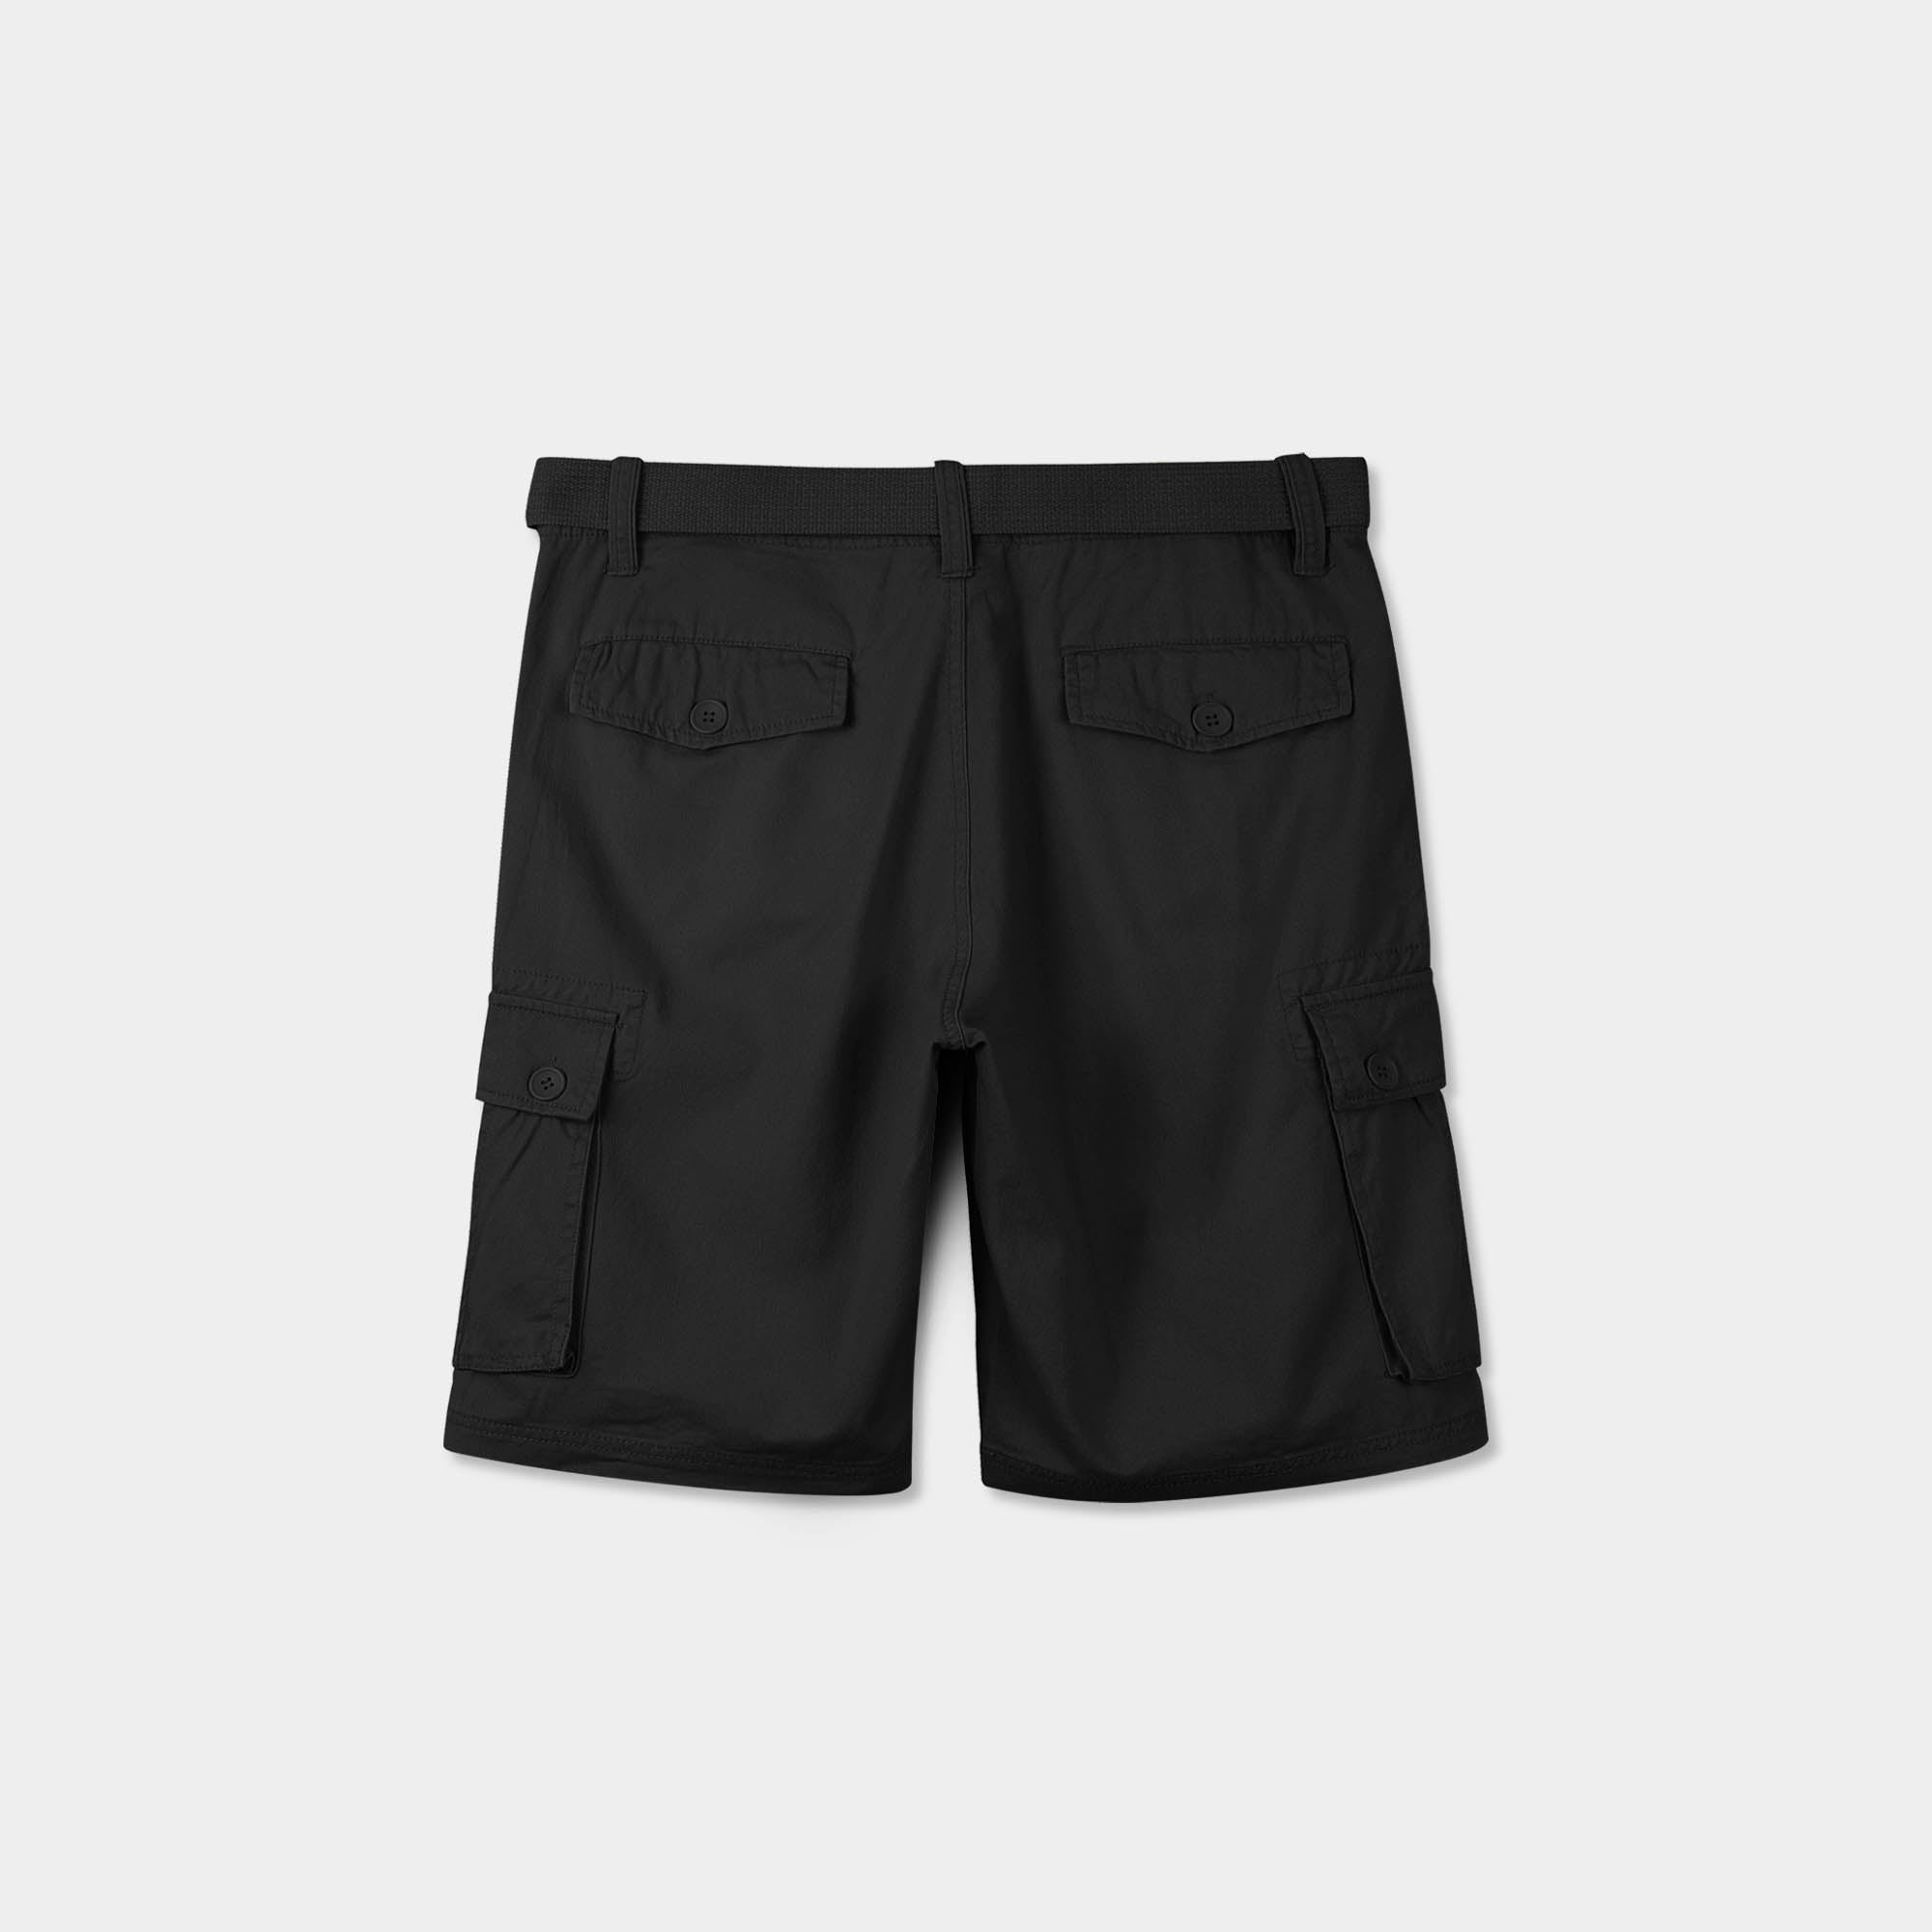 cargo shorts_mens cargo shorts_men's cargo shorts_wrangler cargo shorts_boys cargo shorts_unionbay cargo shorts_old navy cargo shorts_Black